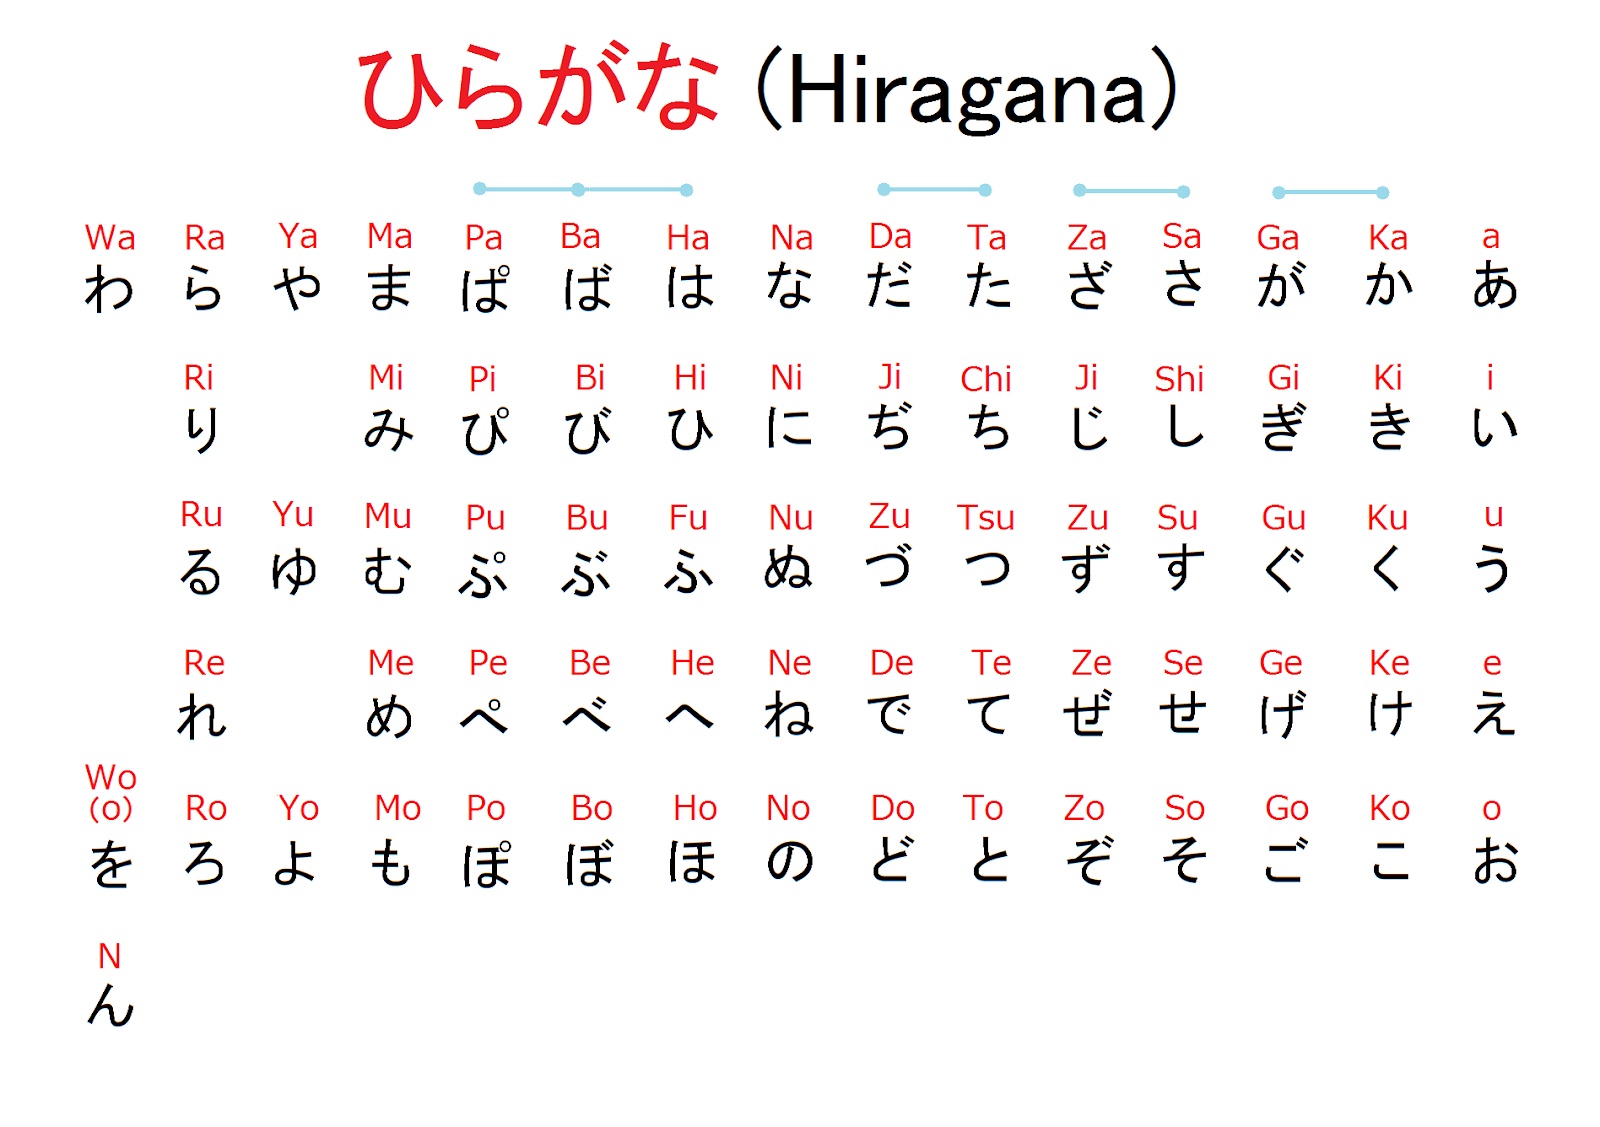 Японский язык знаки. Японская Азбука хирагана. Азбука хирагана японский таблица. Японская Азбука катаканы и Хираганы. Азбука японского языка хирагана и катакана.